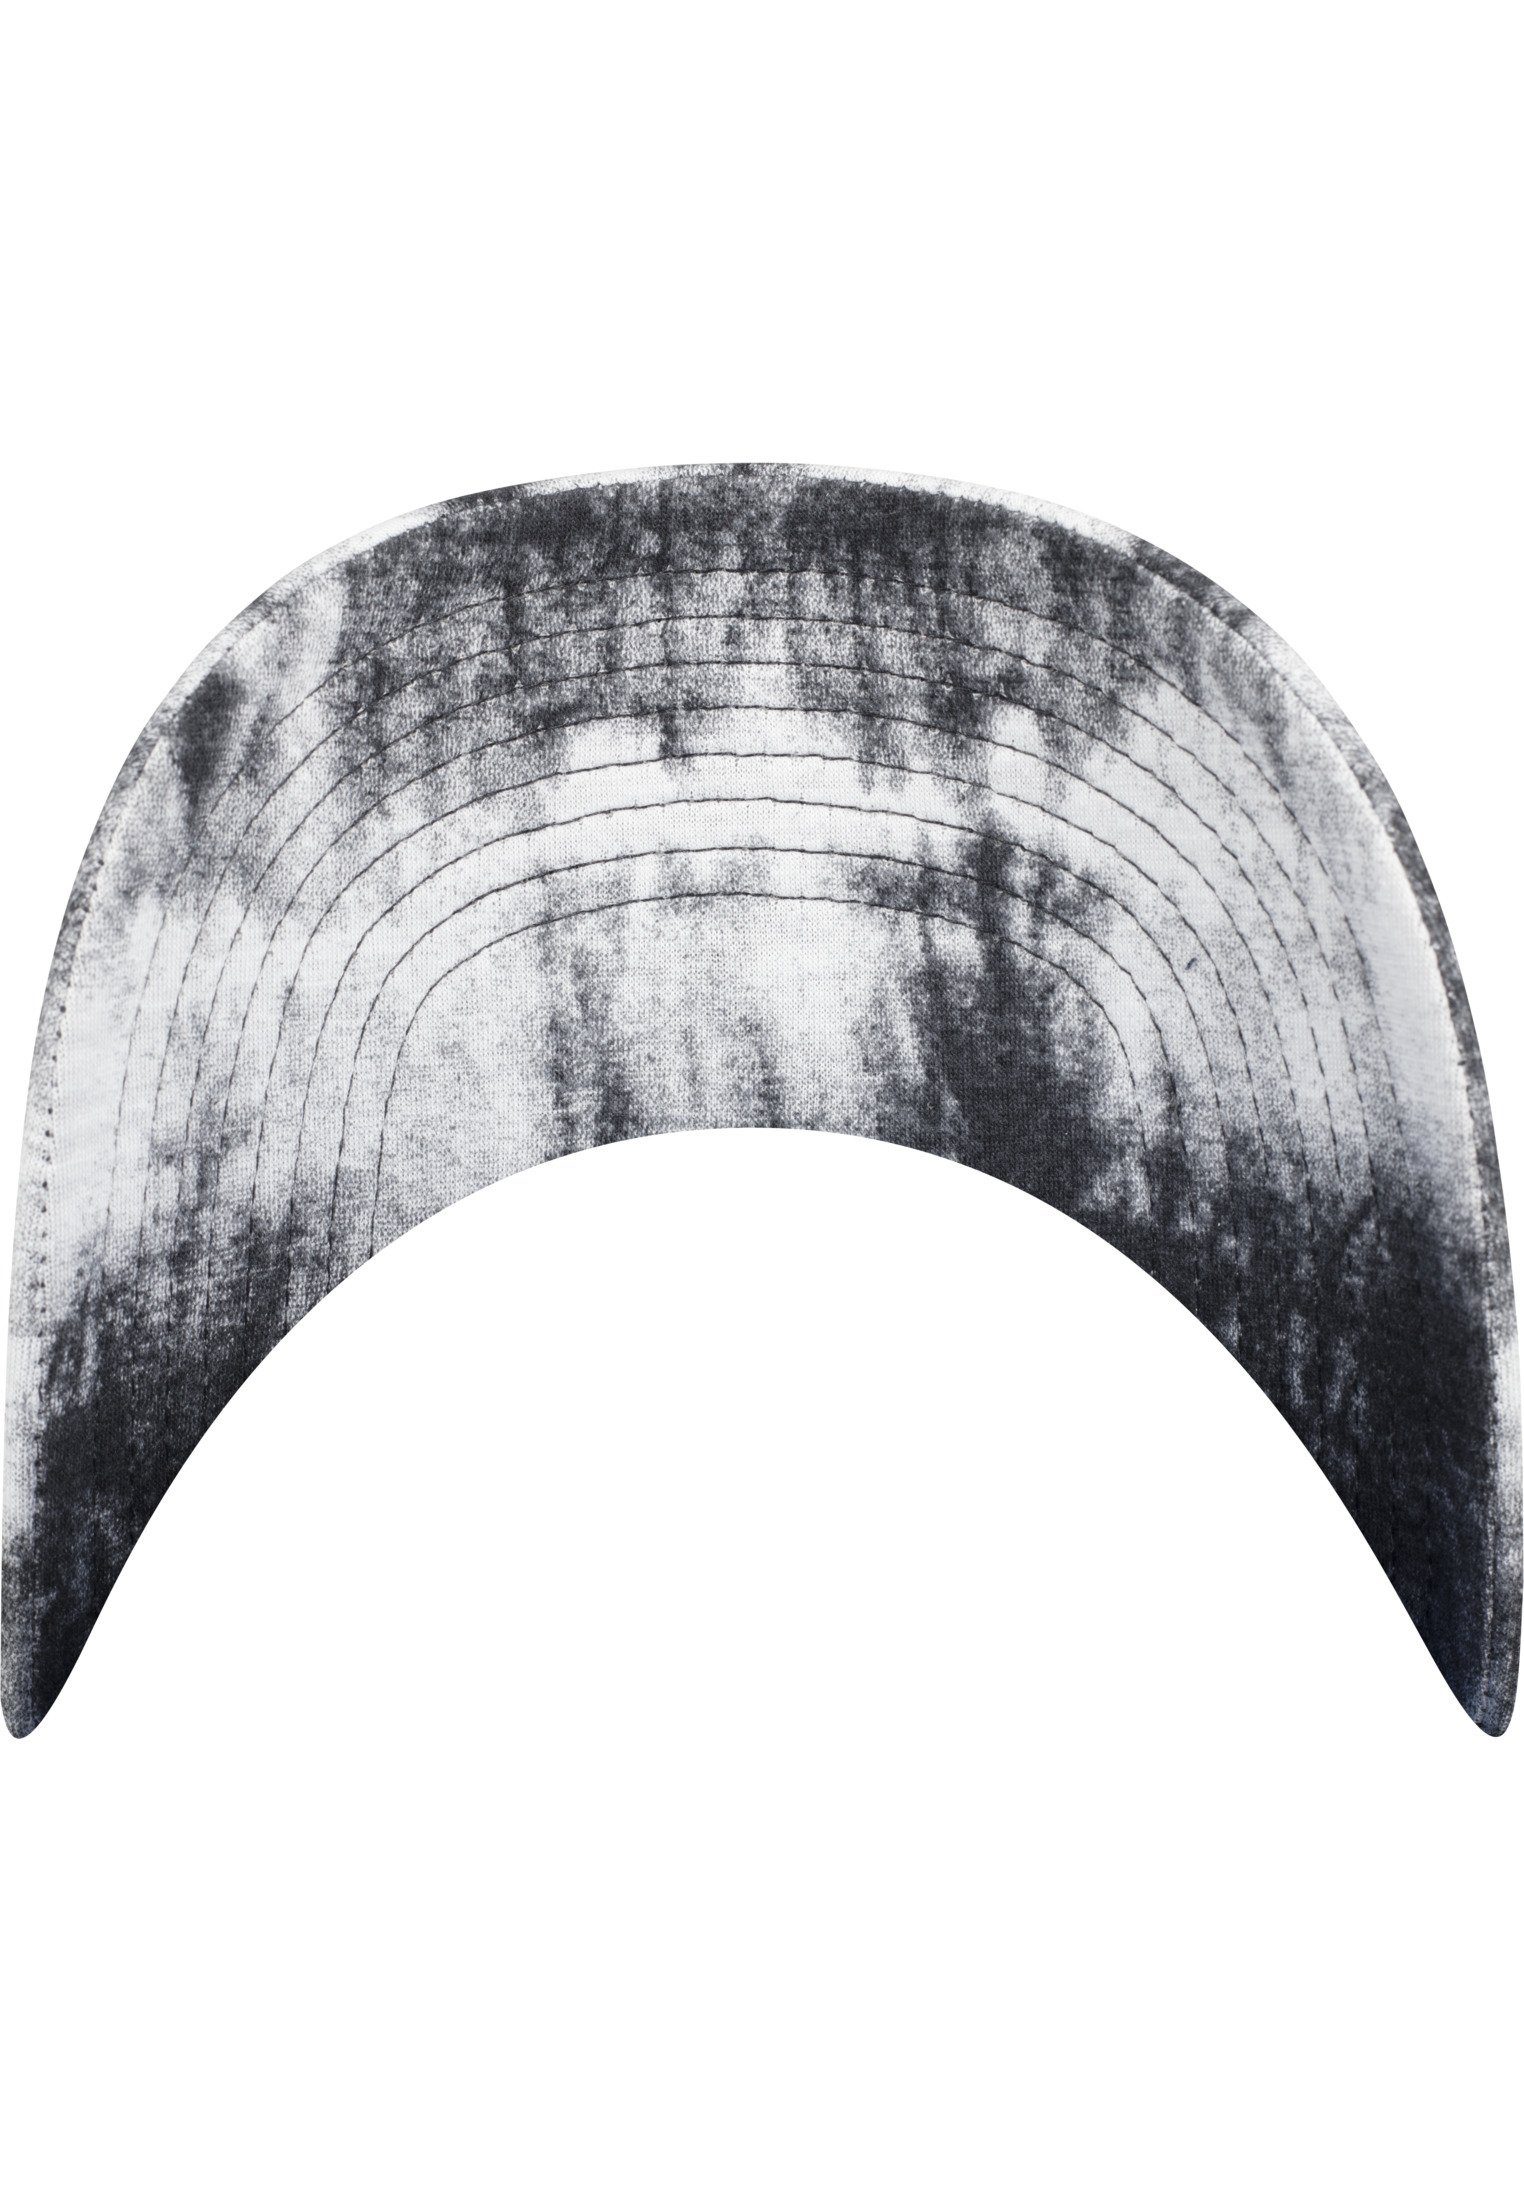 Unisex Cap Cap Flex Dye Tie grey Profile Dye 6245TD Flexfit Low Tie